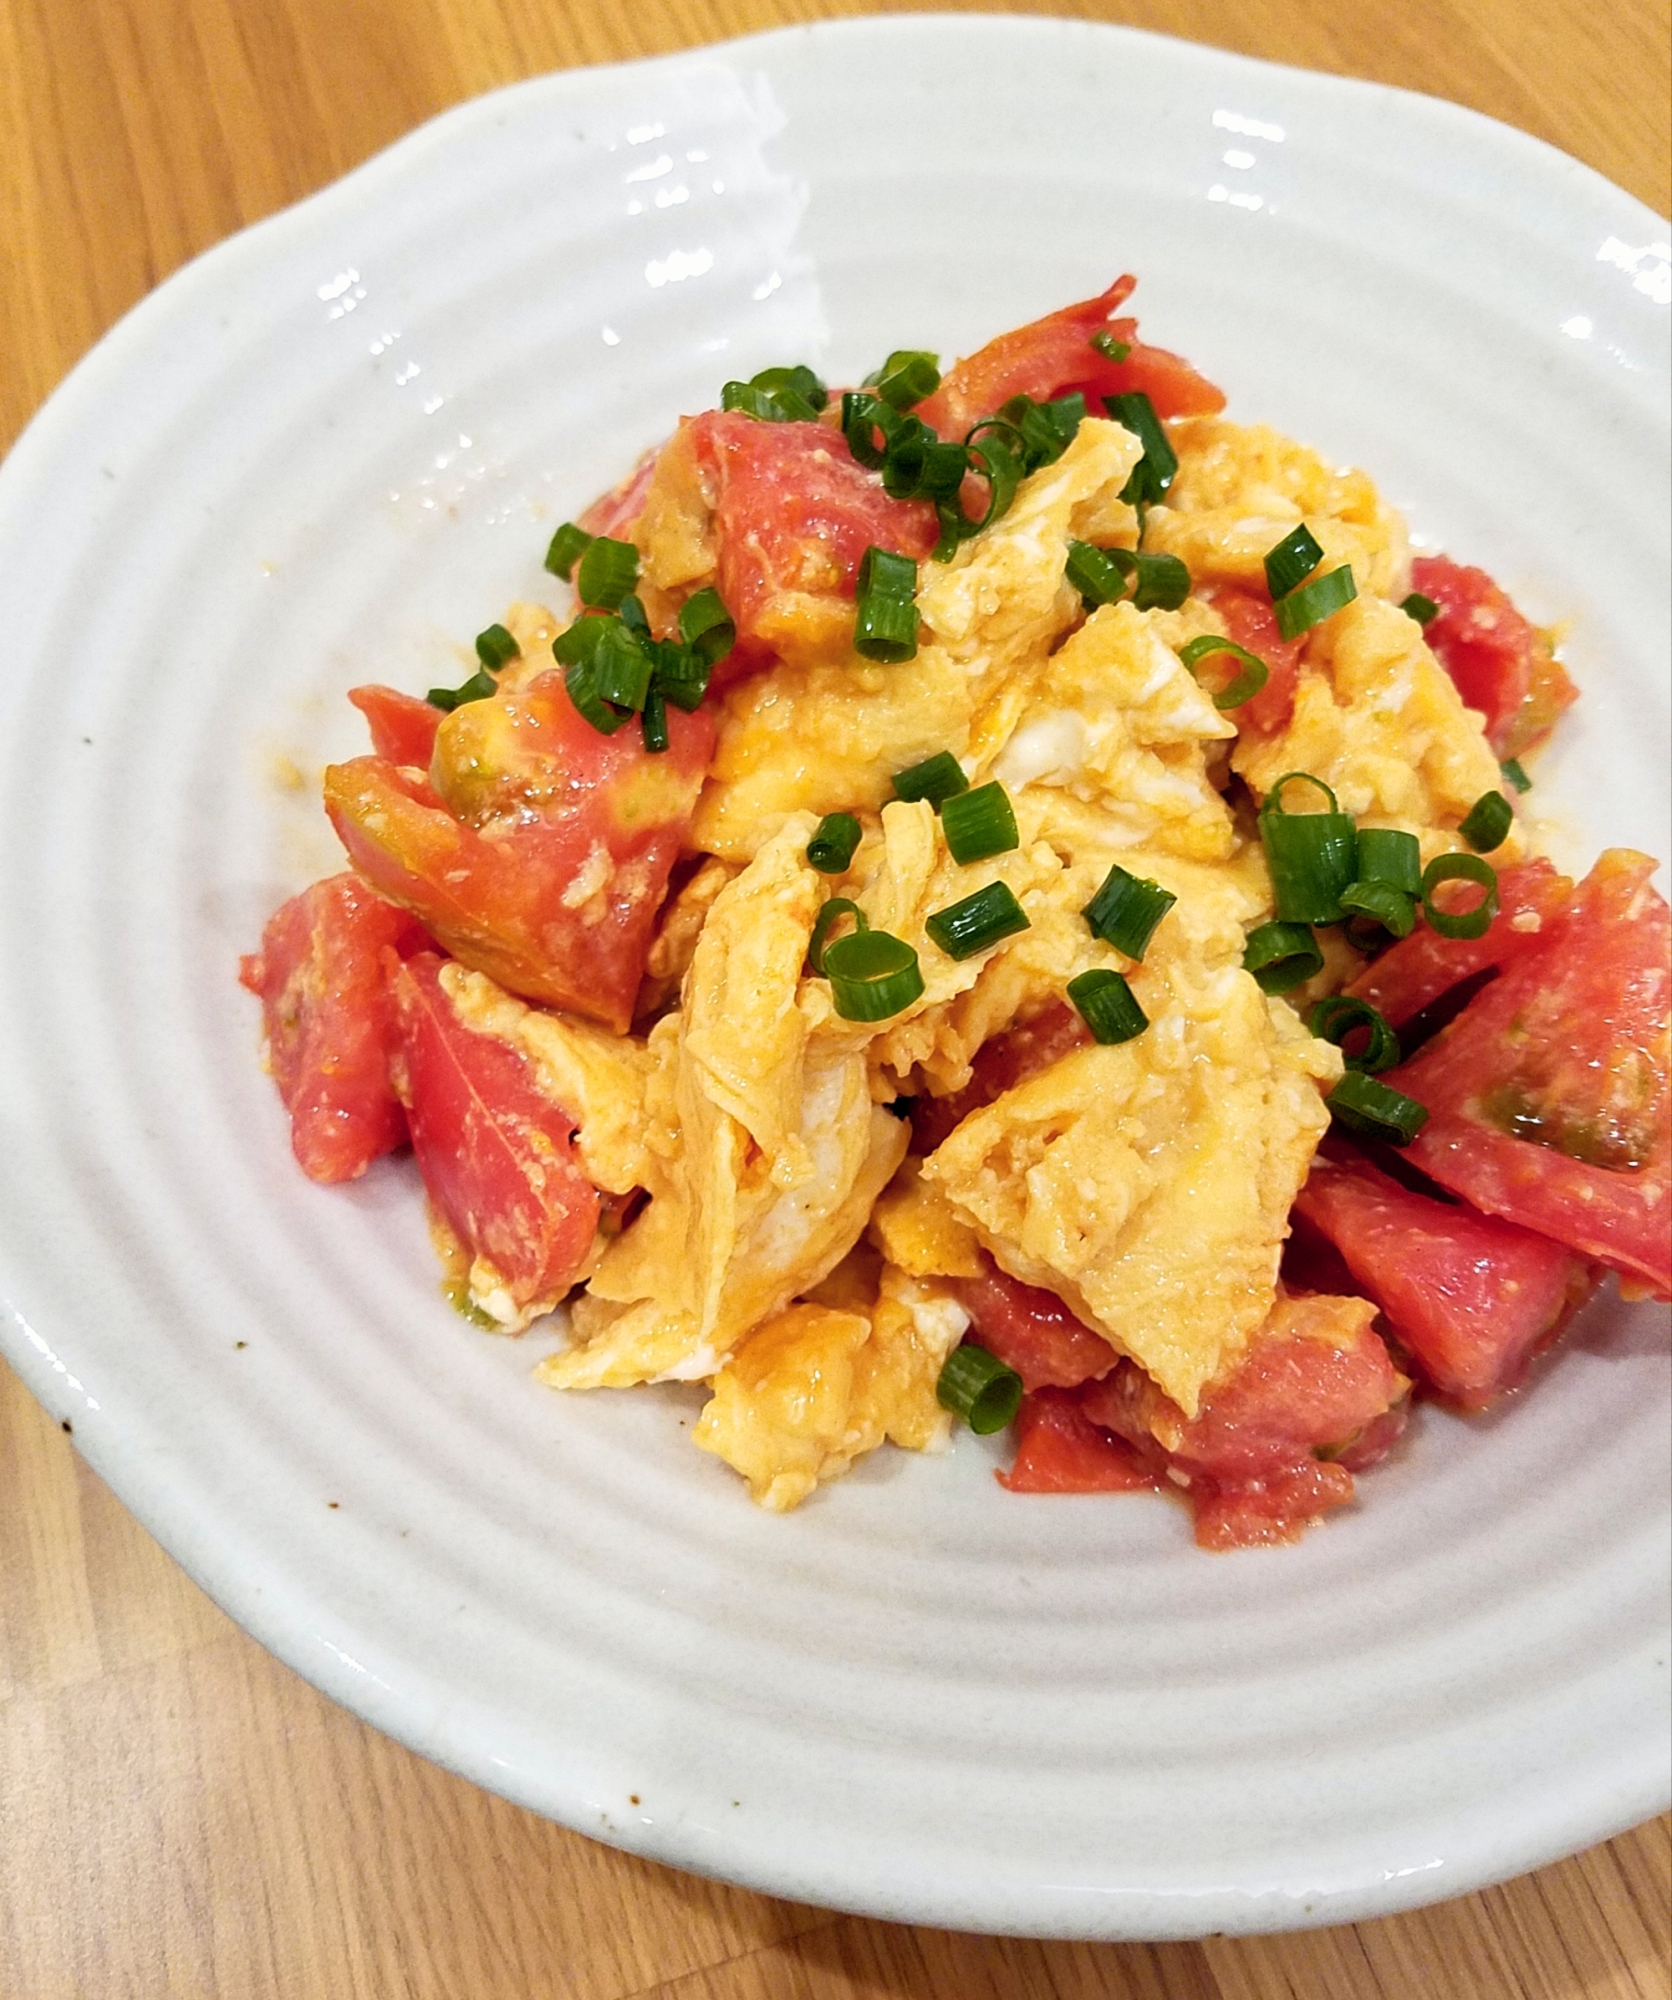 ふわふわ卵とトマトの中華炒め☆ - MORE-IPPIN | 毎日の献立の「もう一品」を提案するサービス